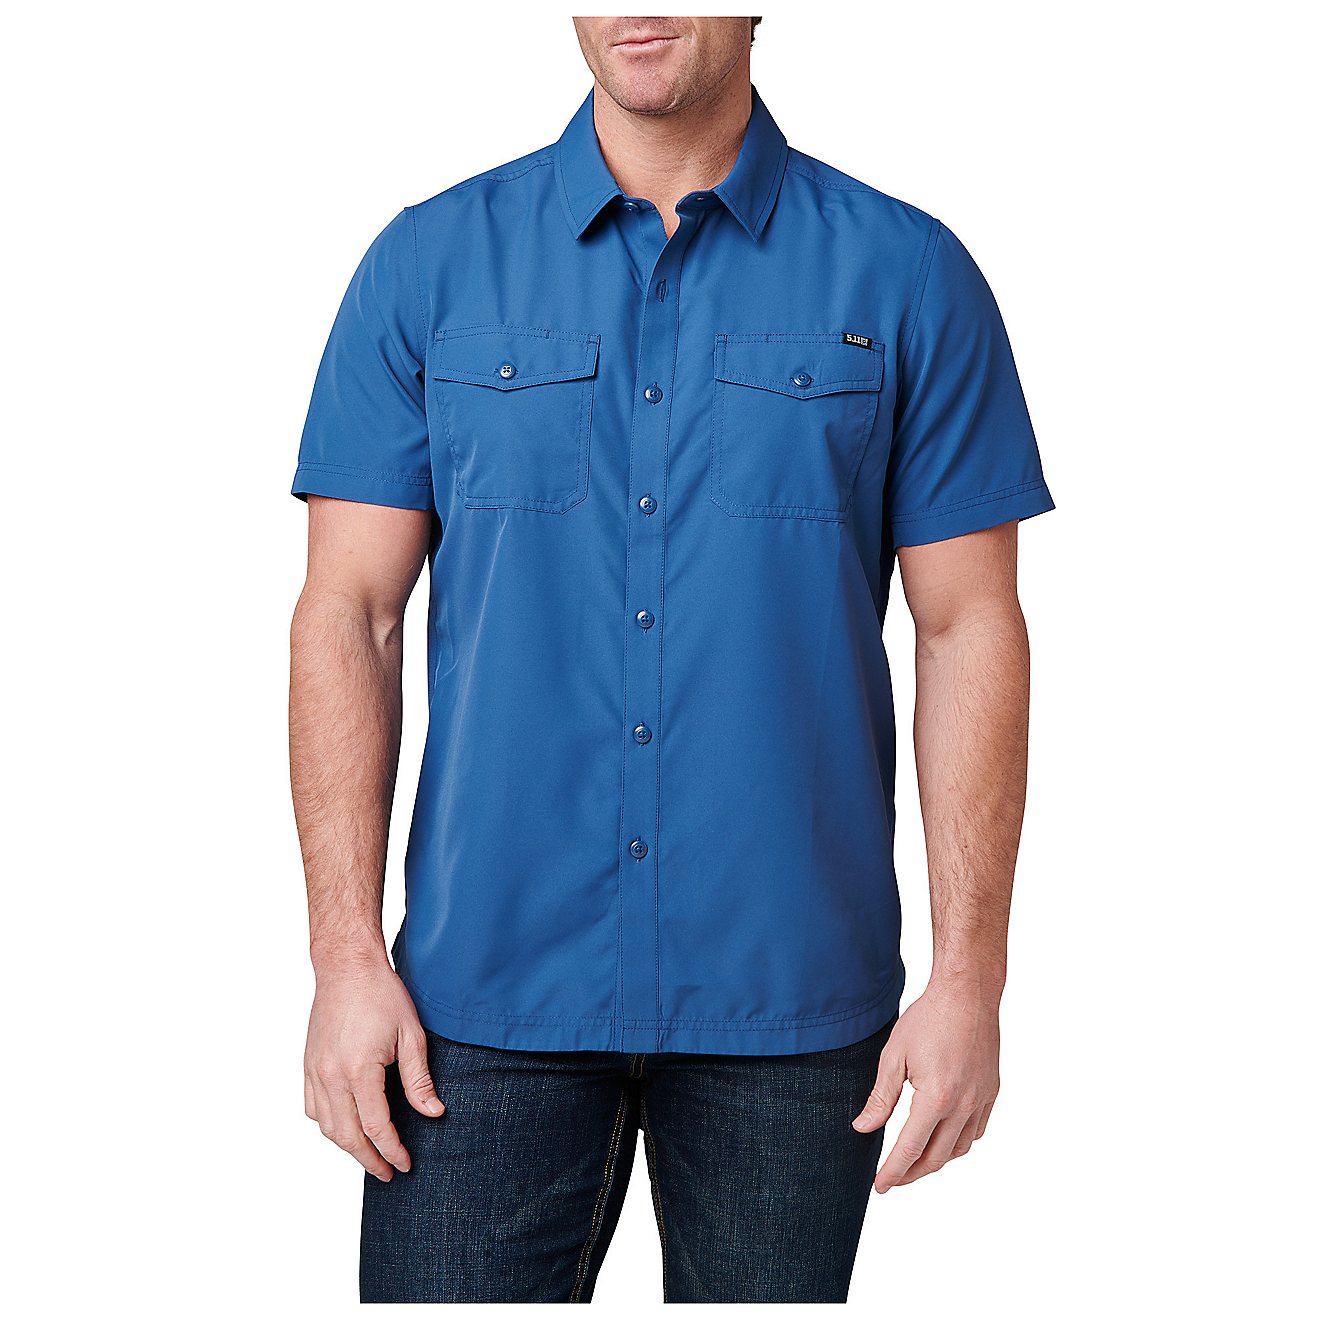 5.11 Men's Marksman Short Sleeve Shirt | Free Shipping at Academy